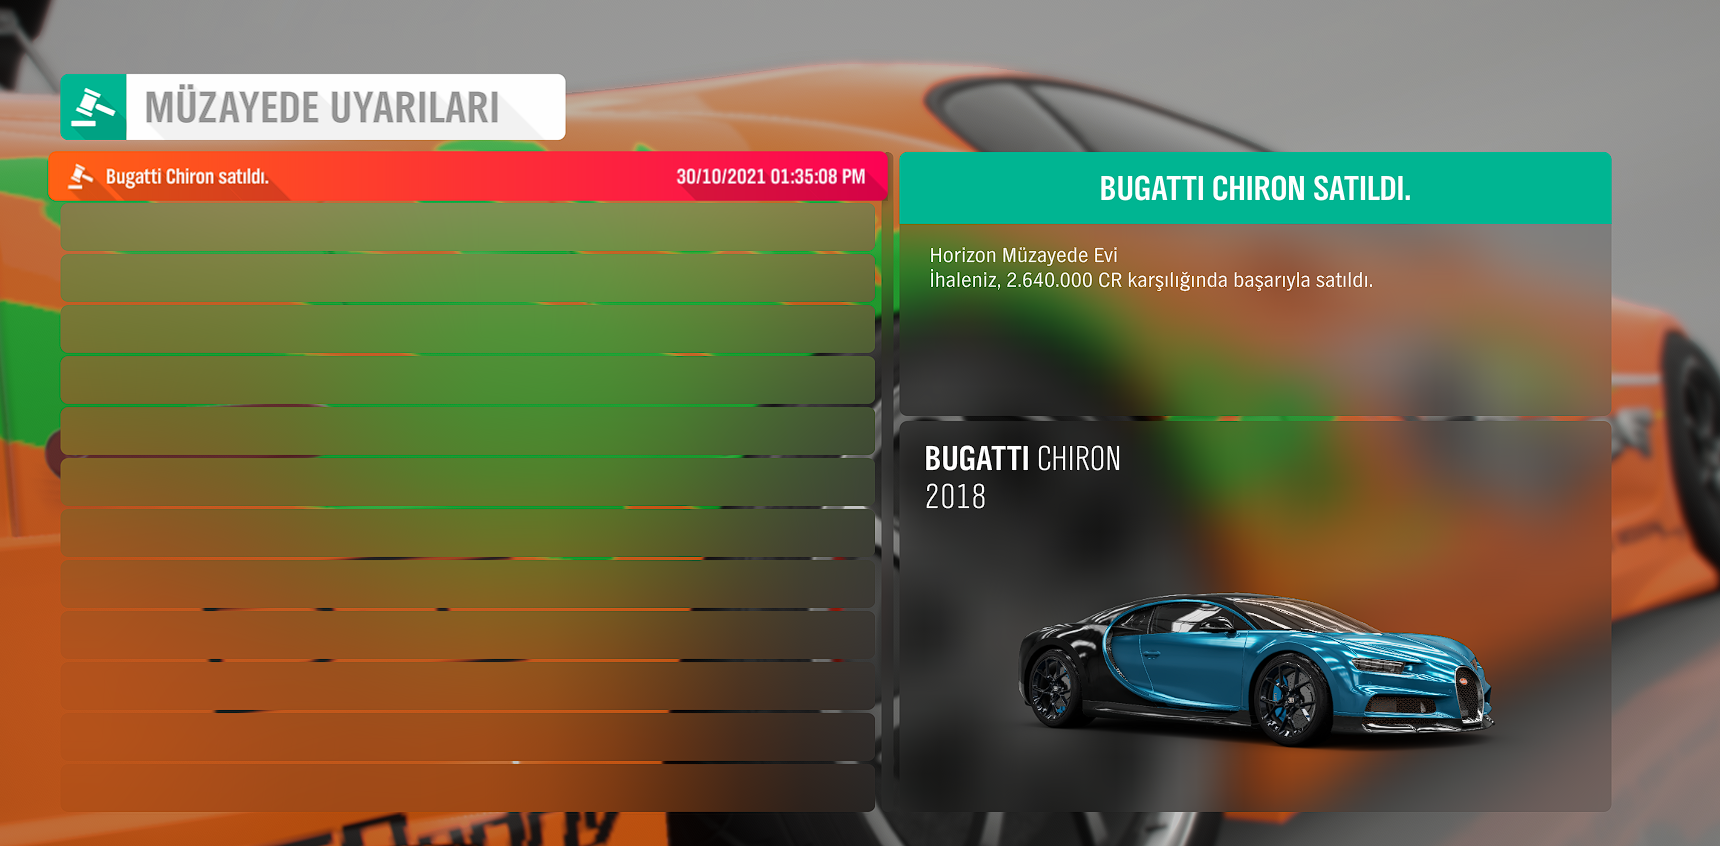 Forza Horizon 4 araba parası gelmedi | Technopat Sosyal